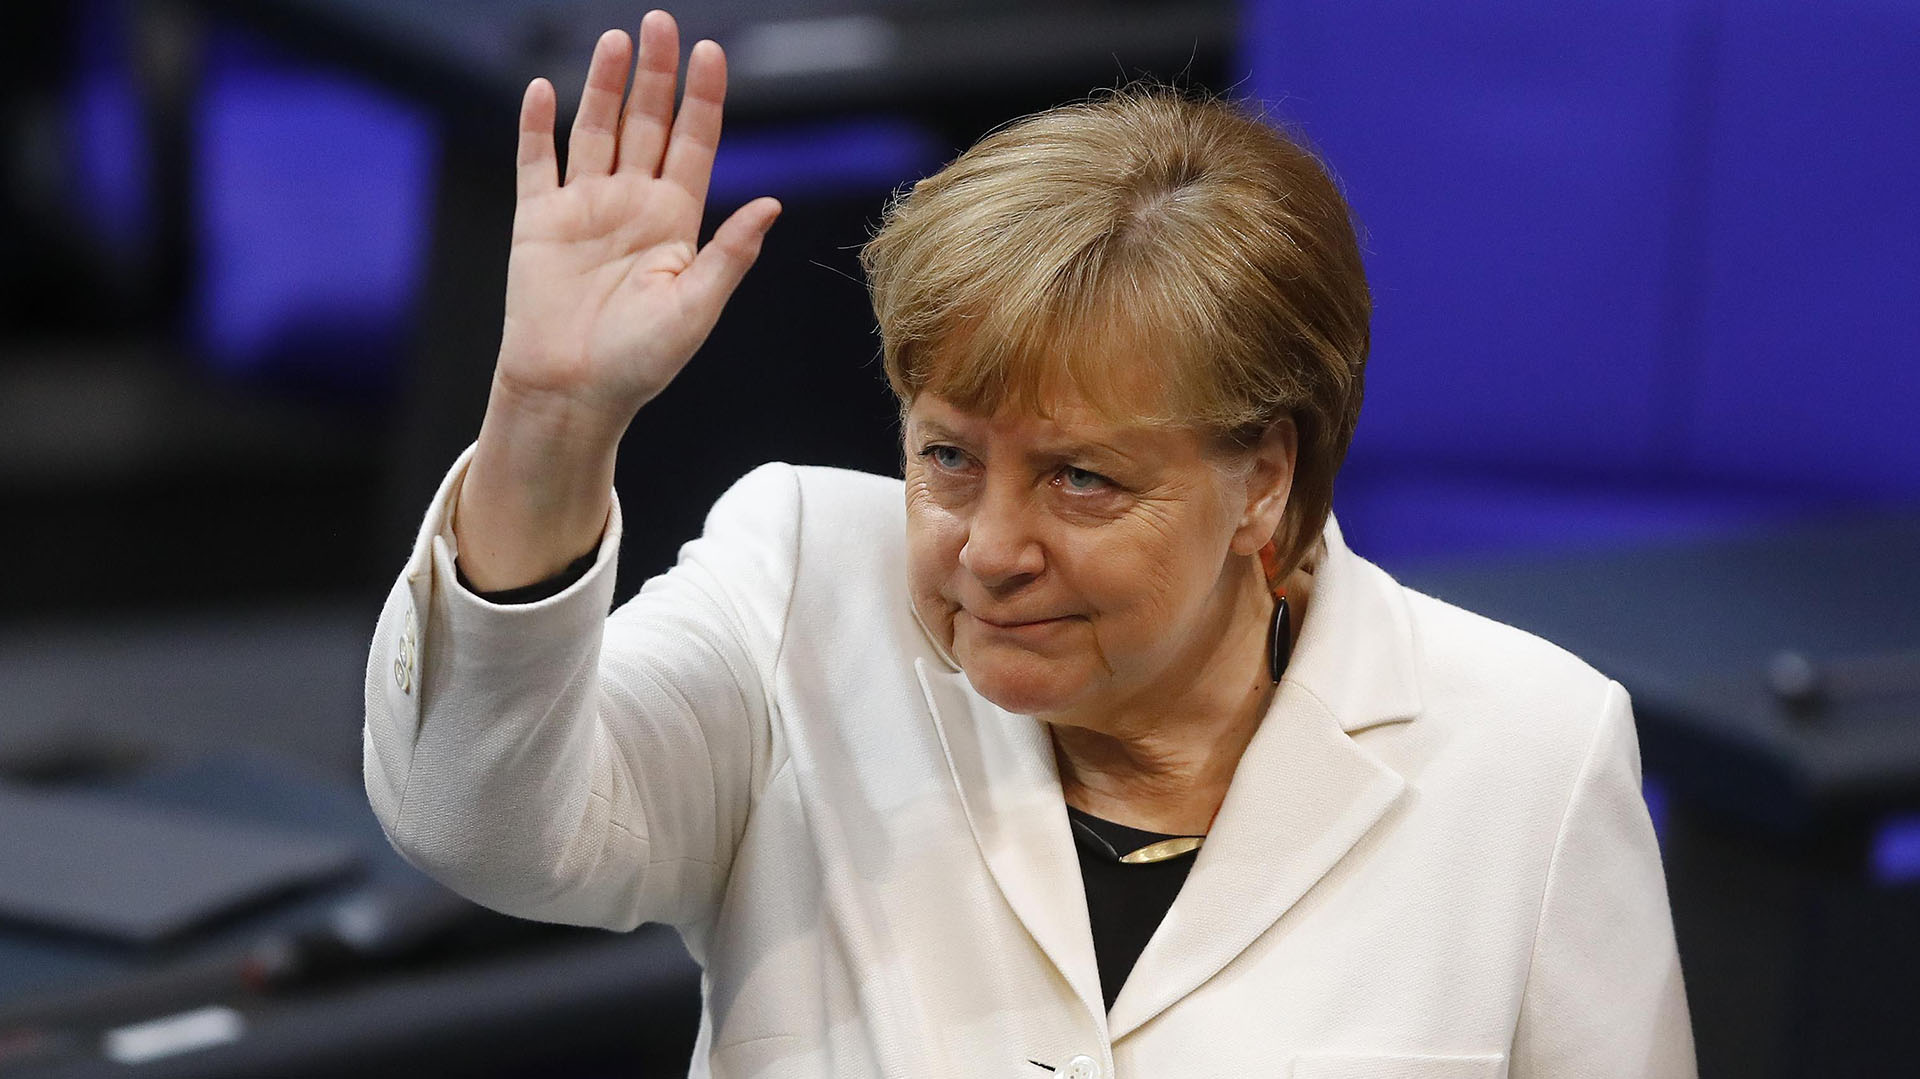 La canciller Angela Merkel anunció su retiro  (Reuters)